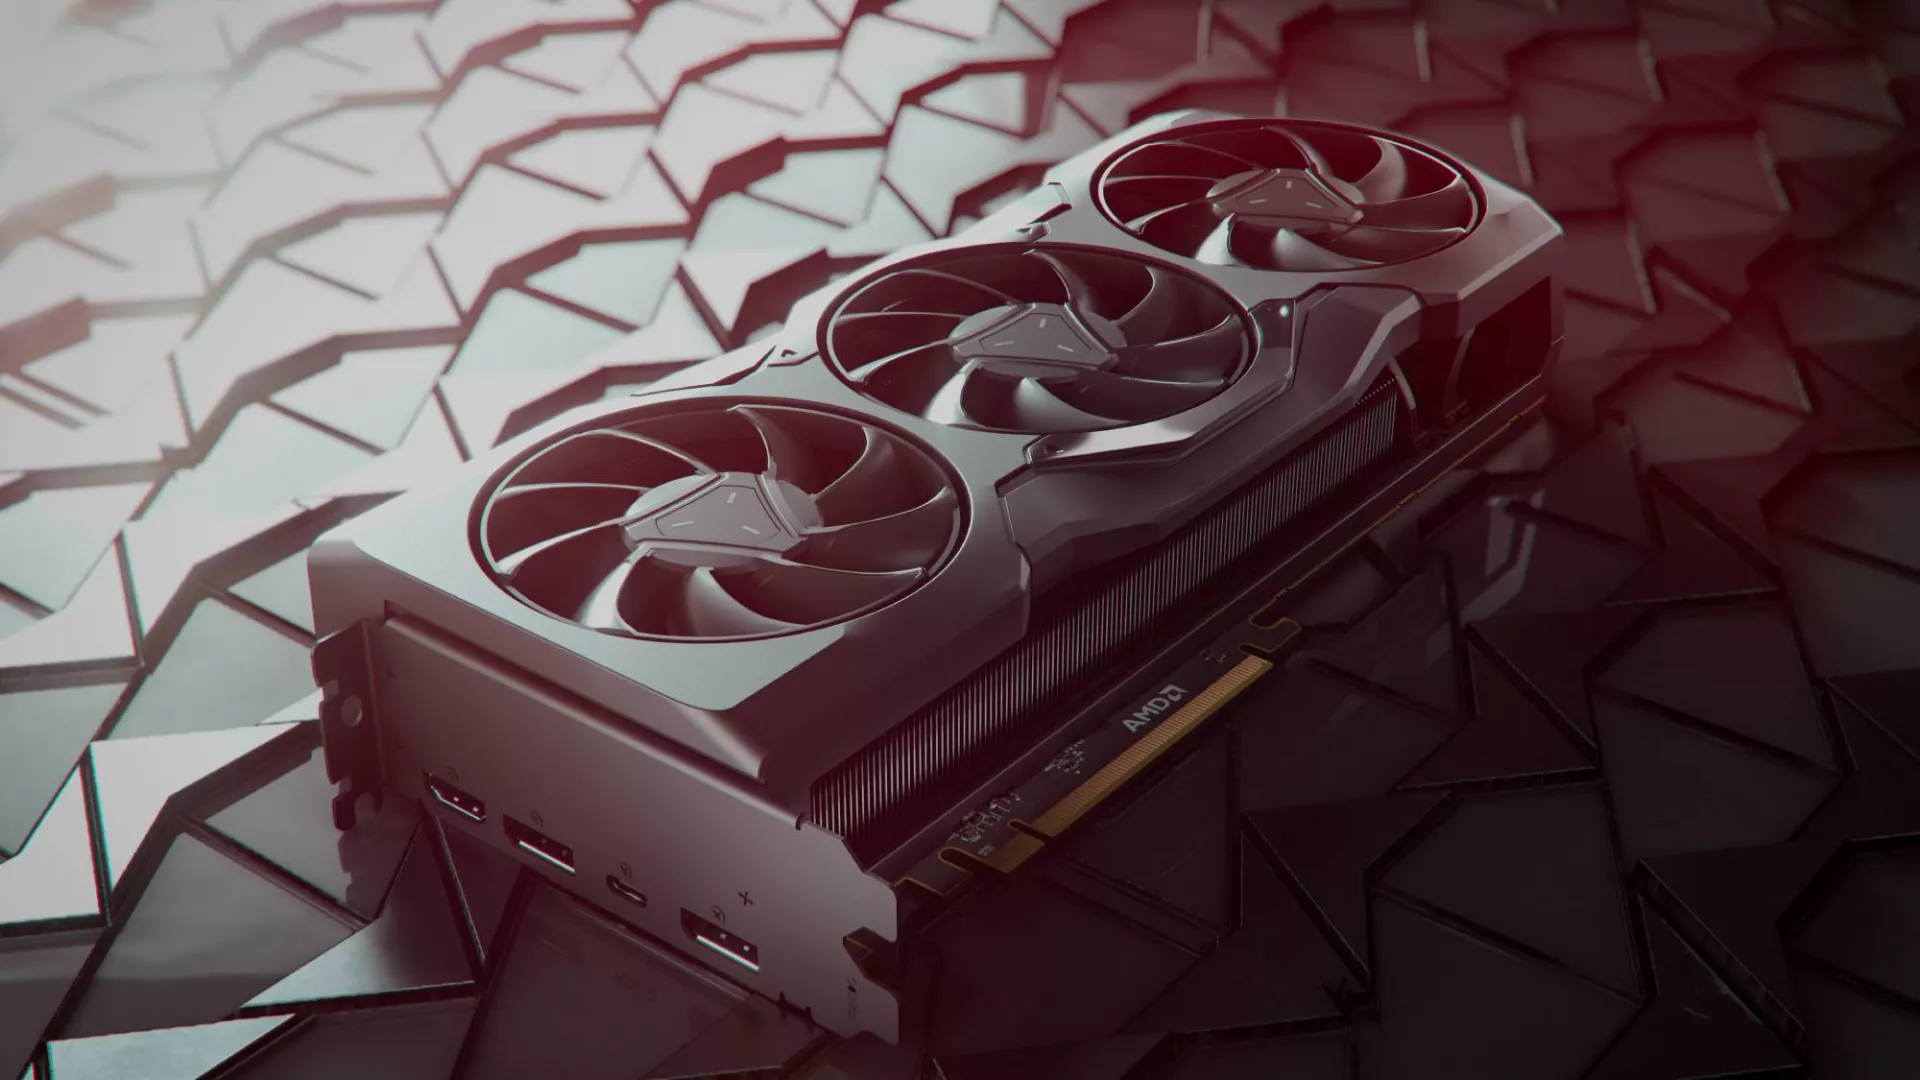 Η AMD κατηγορείται ότι έκανε τους καταναλωτές «πειραματόζωα» πουλώντας «ημιτελείς» RX 7900 GPUs [Ενημέρωση]